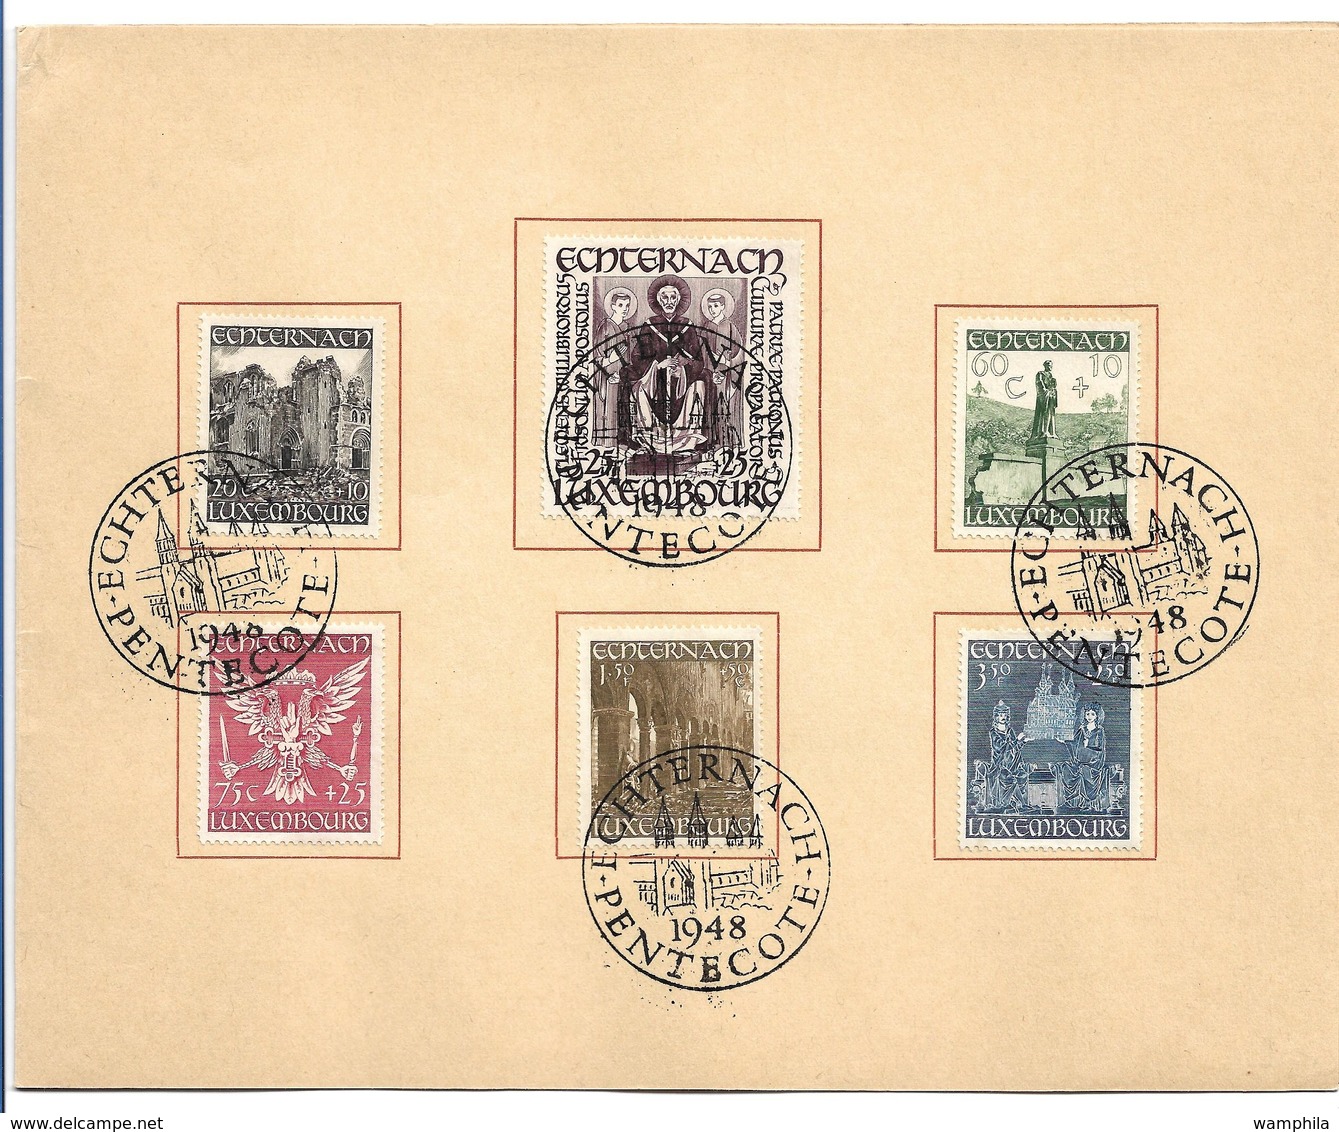 Luxembourg un lot de timbres neufs et oblitérés et lettres (Journée du timbre de 1939/1981)plus deux documents.